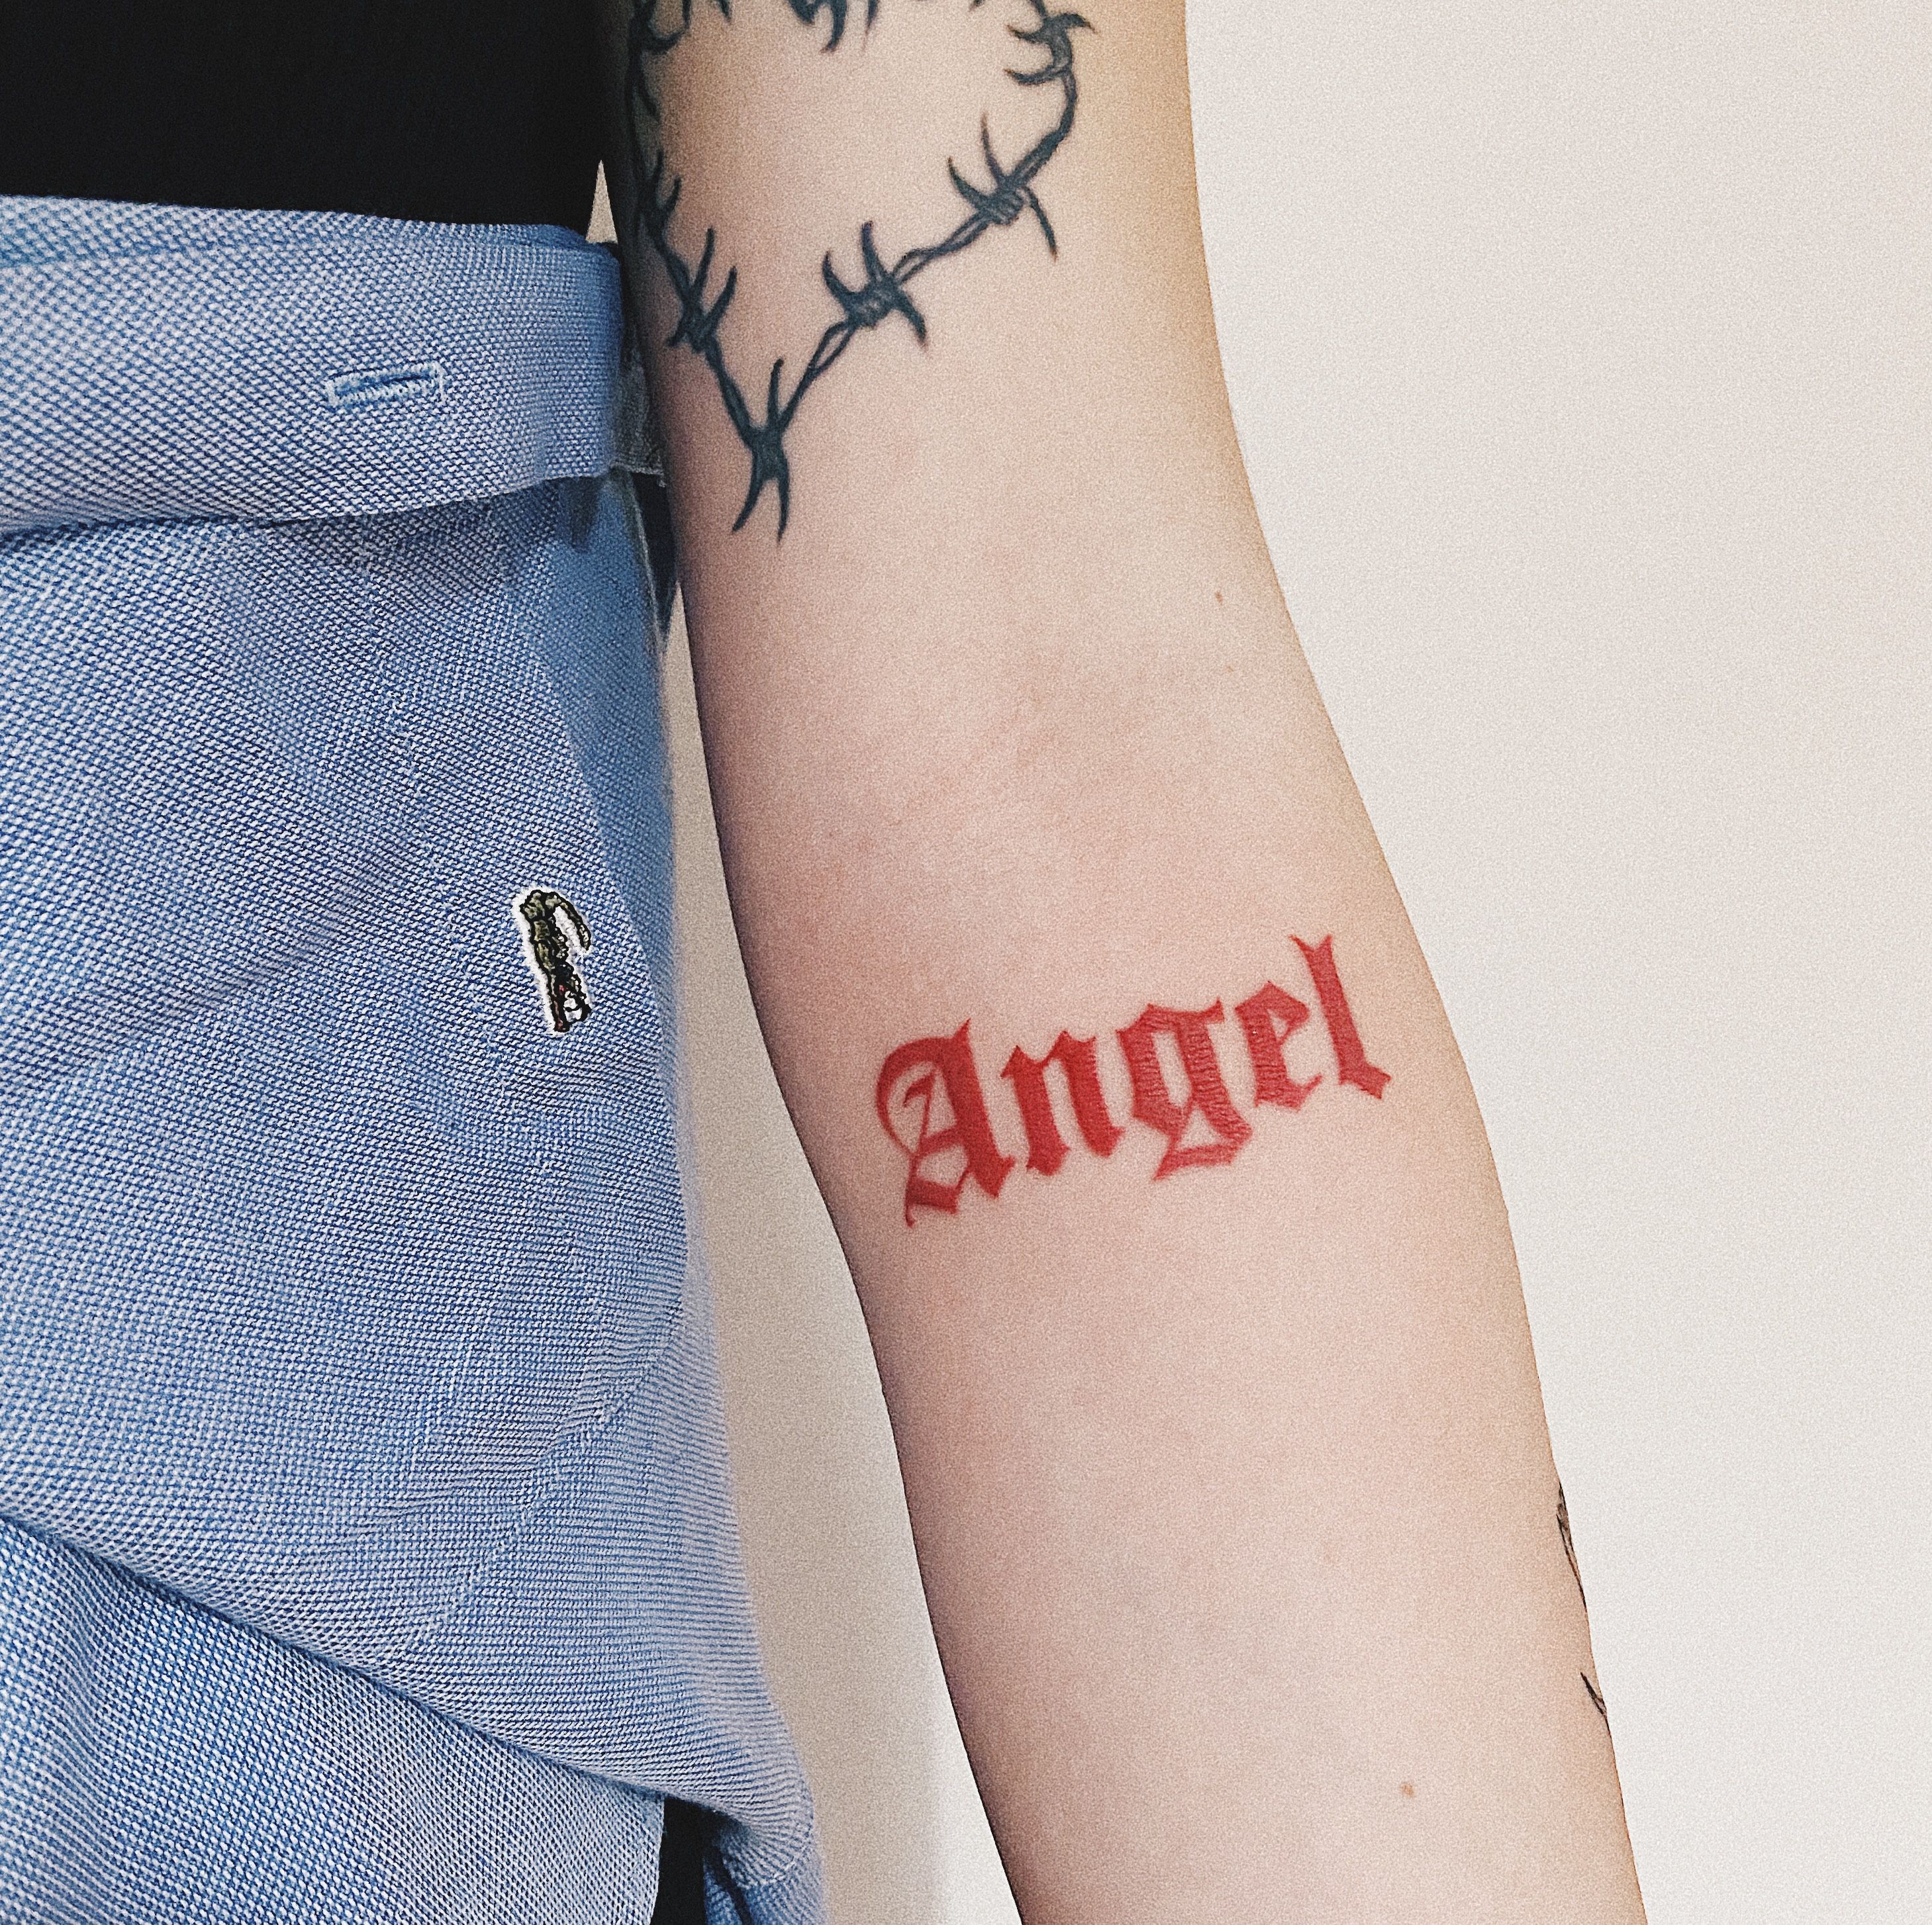 51 Angel tattoo Ideas Best Designs  Canadian Tattoos